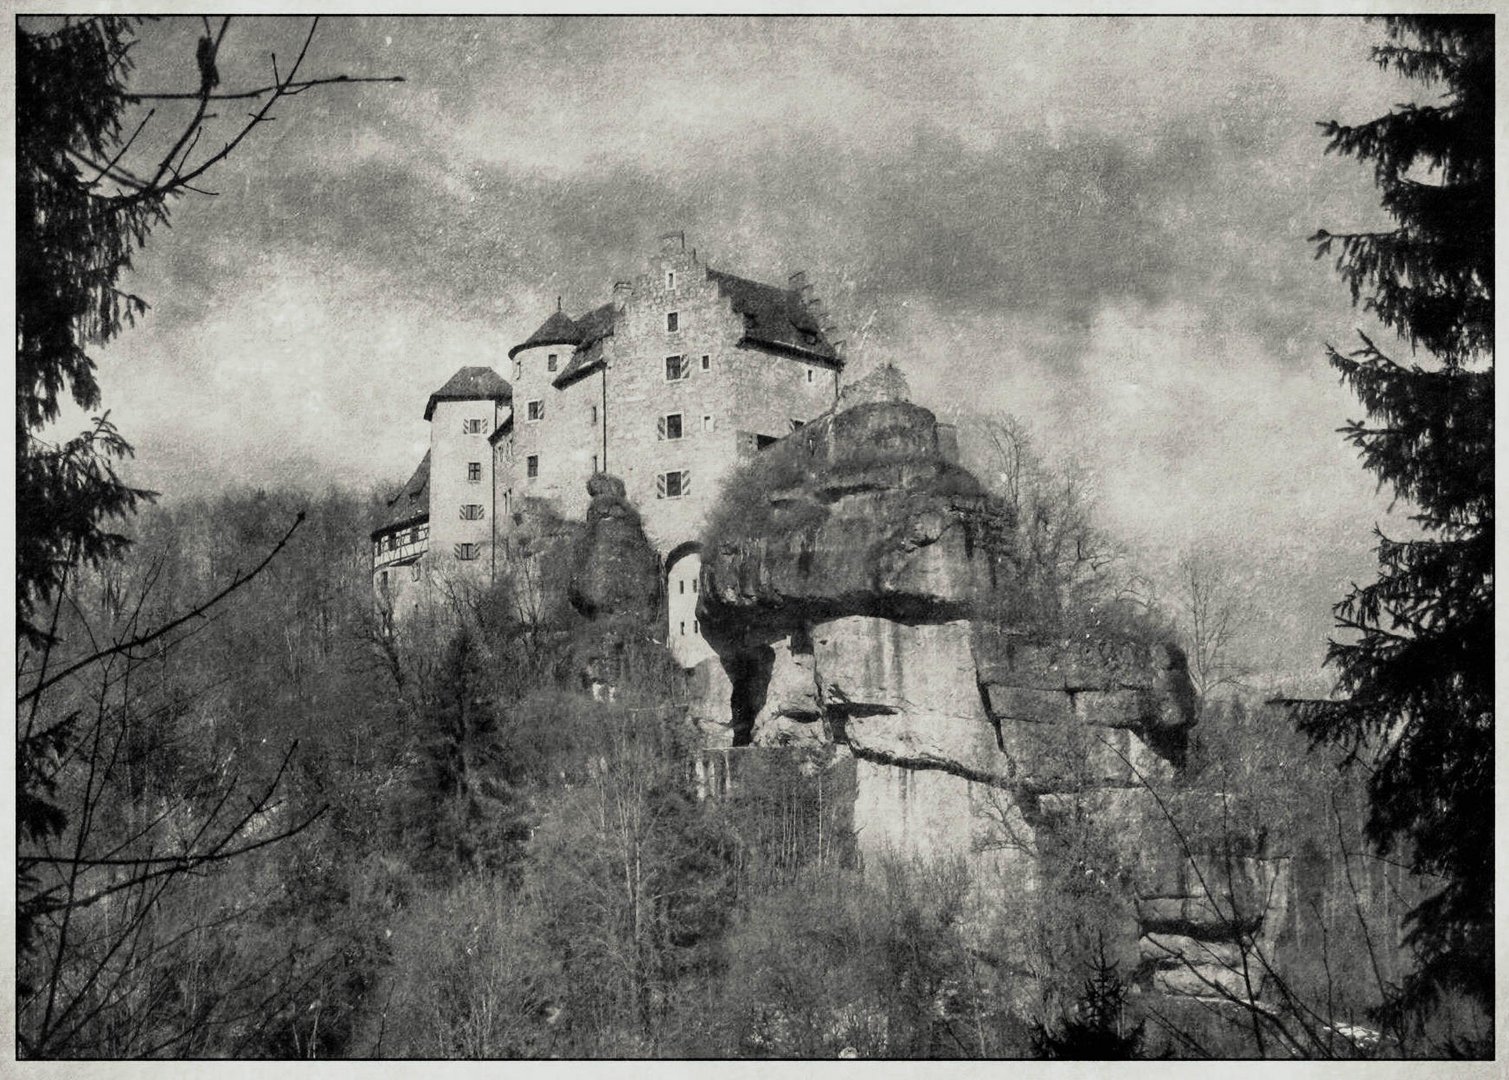 Durchblick zur Burg Rabenstein 